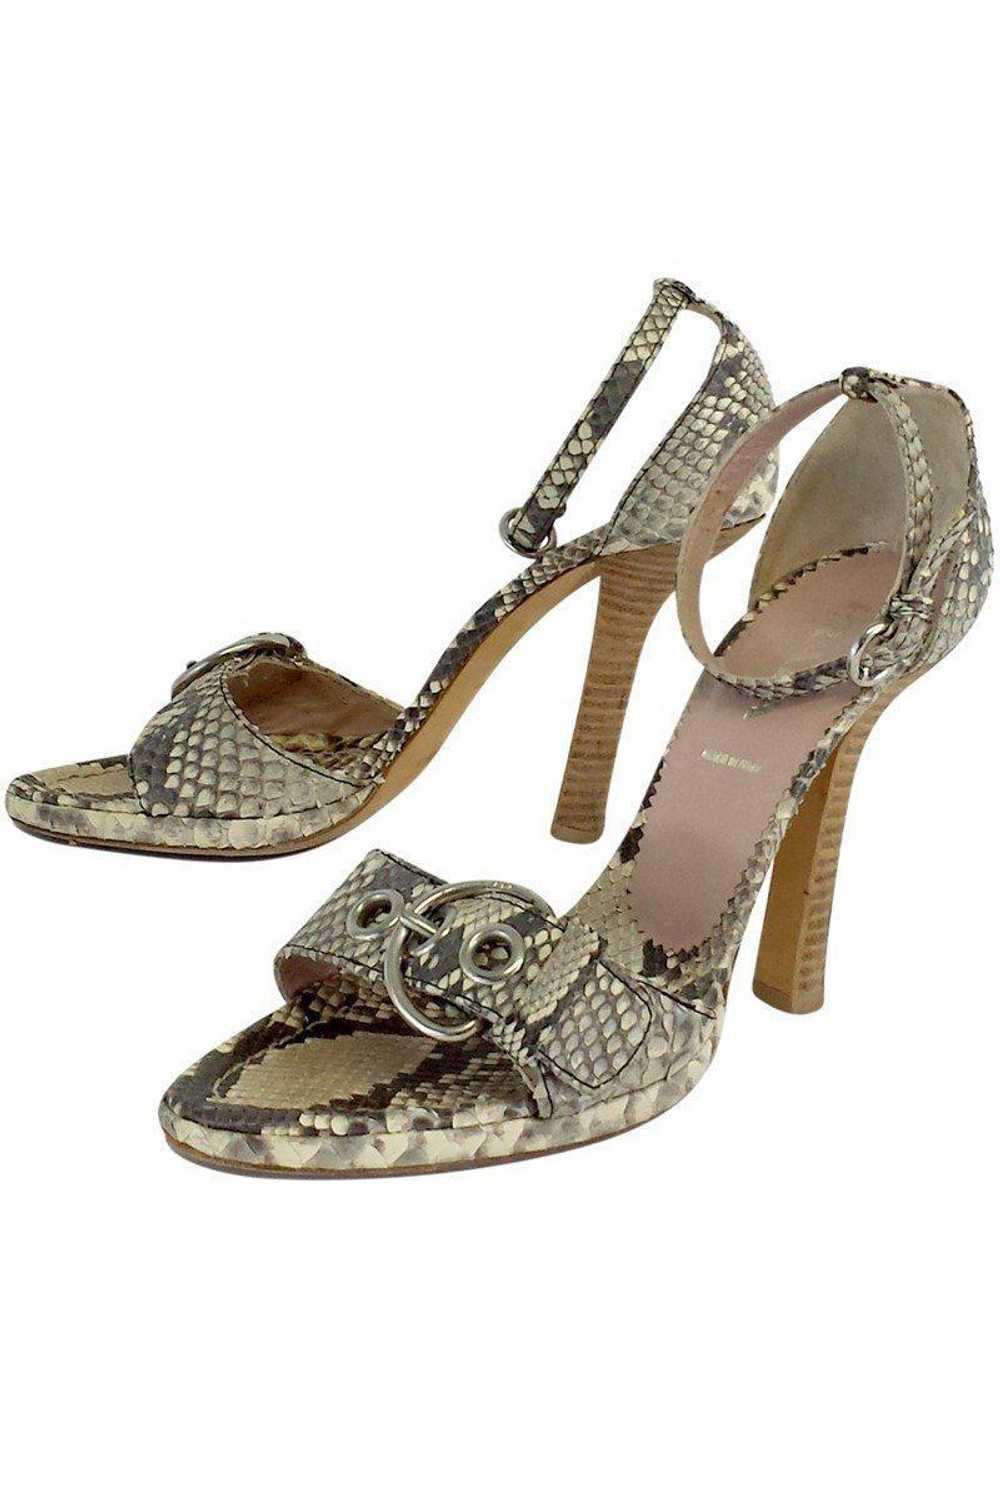 Prada - Beige & Grey Snakeskin Sandal Heels Sz 7 - image 1